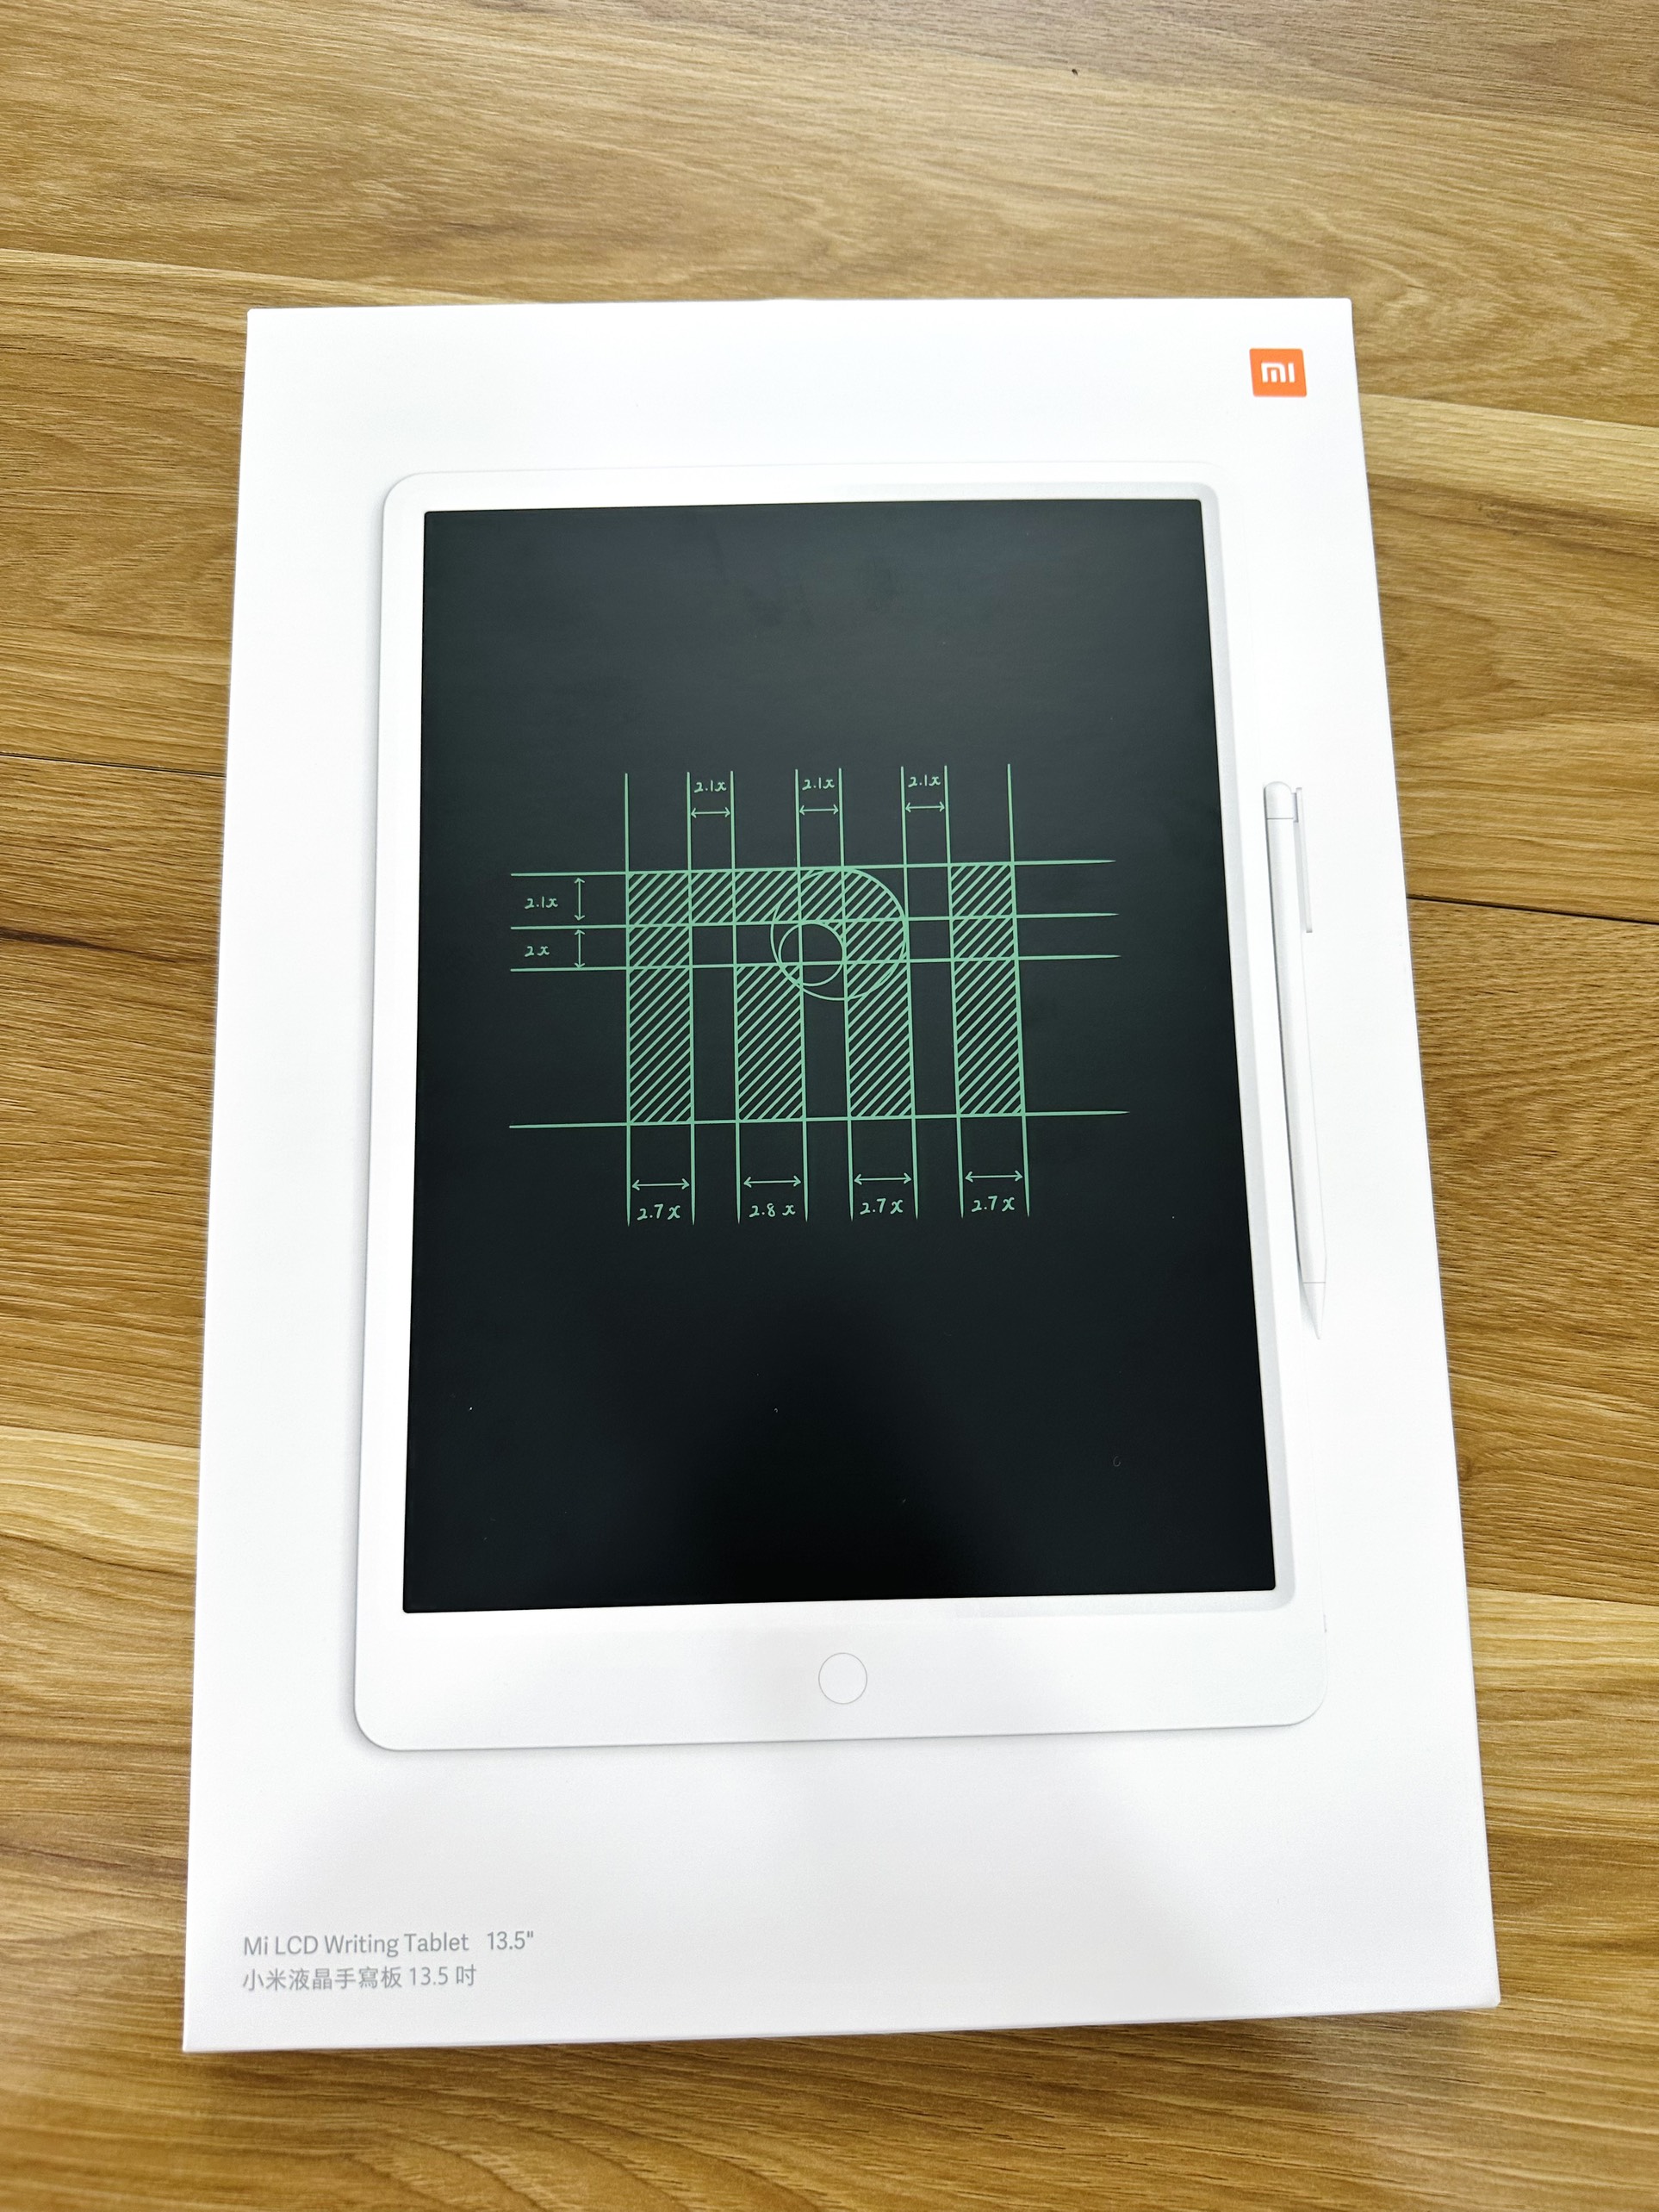 Bảng vẽ điện tử Xiaomi LCD 13.5" inch thông minh - Hàng chính hãng - Mi LCD Writing Tablet 13.5"